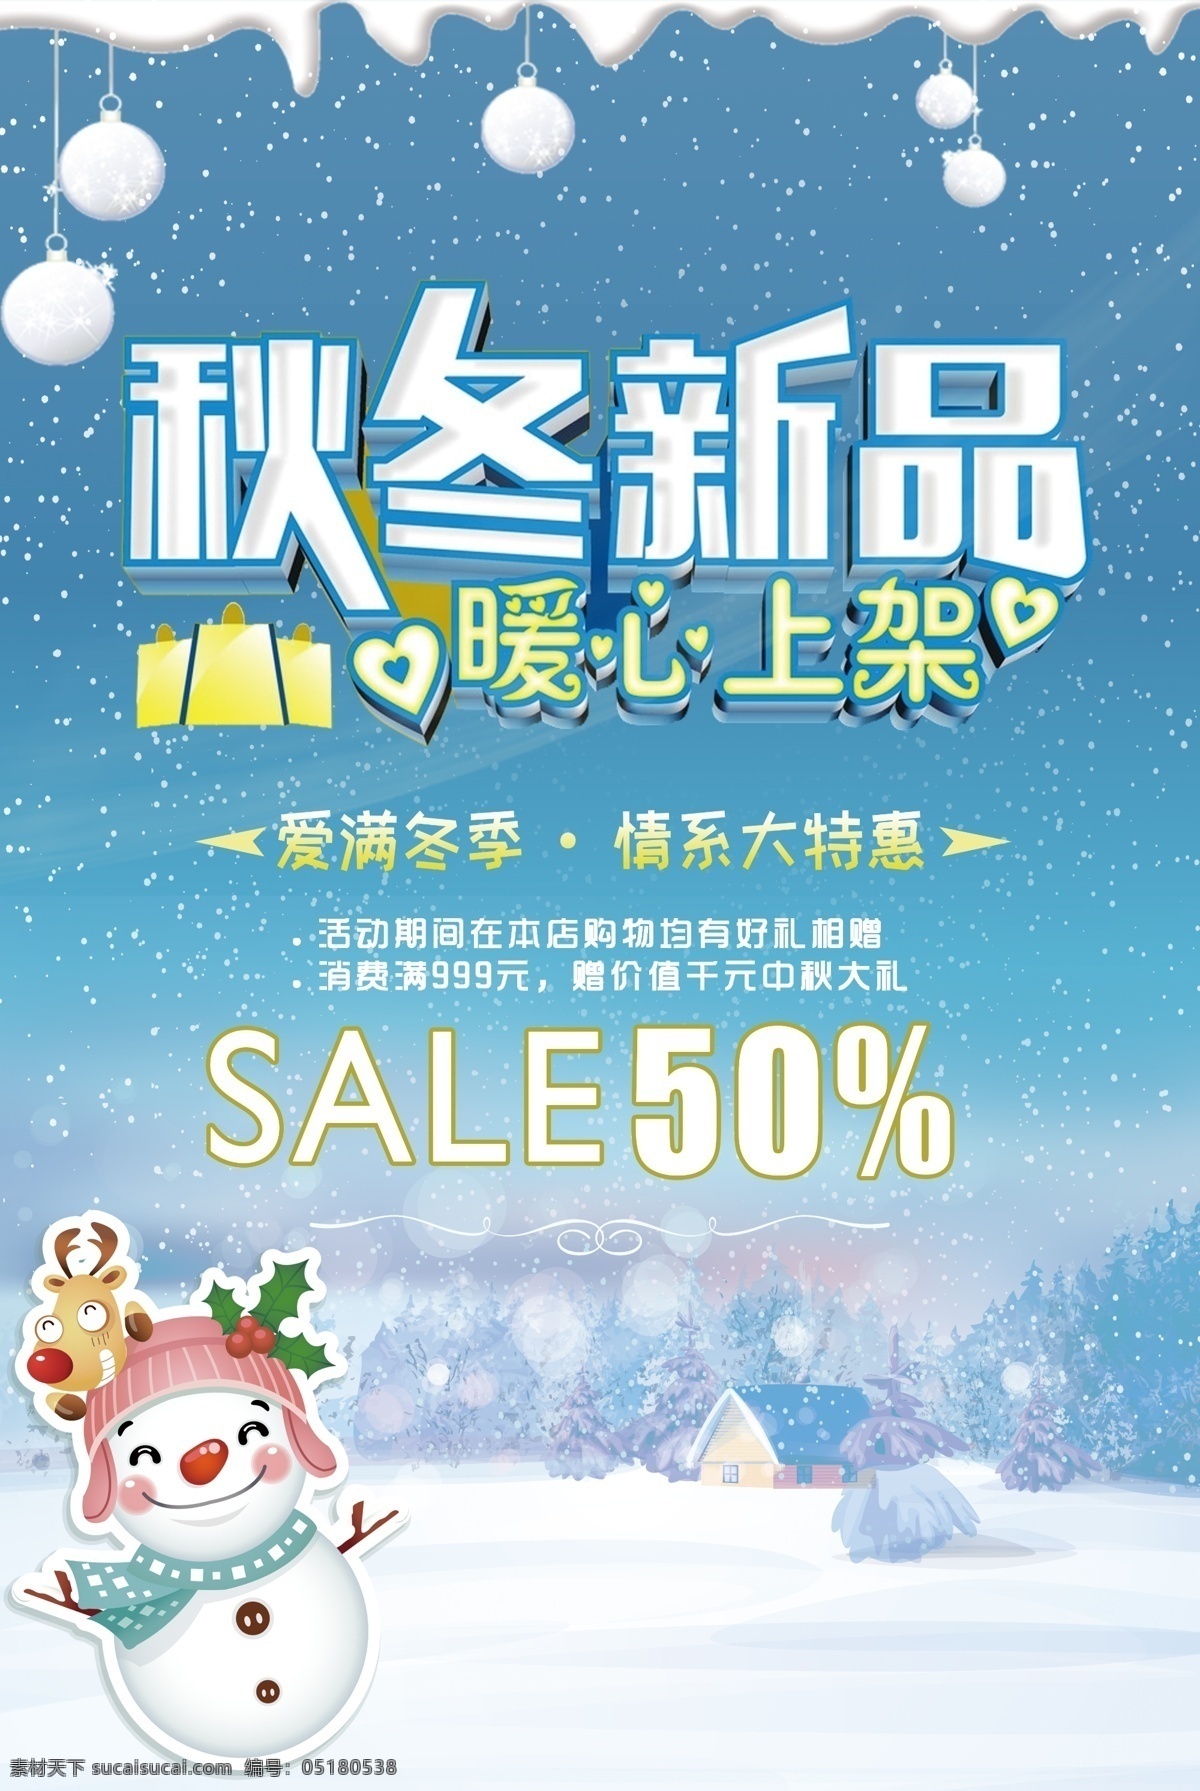 清新 节日 雪地 促销 礼物 圣诞 海报 老人 圣诞节